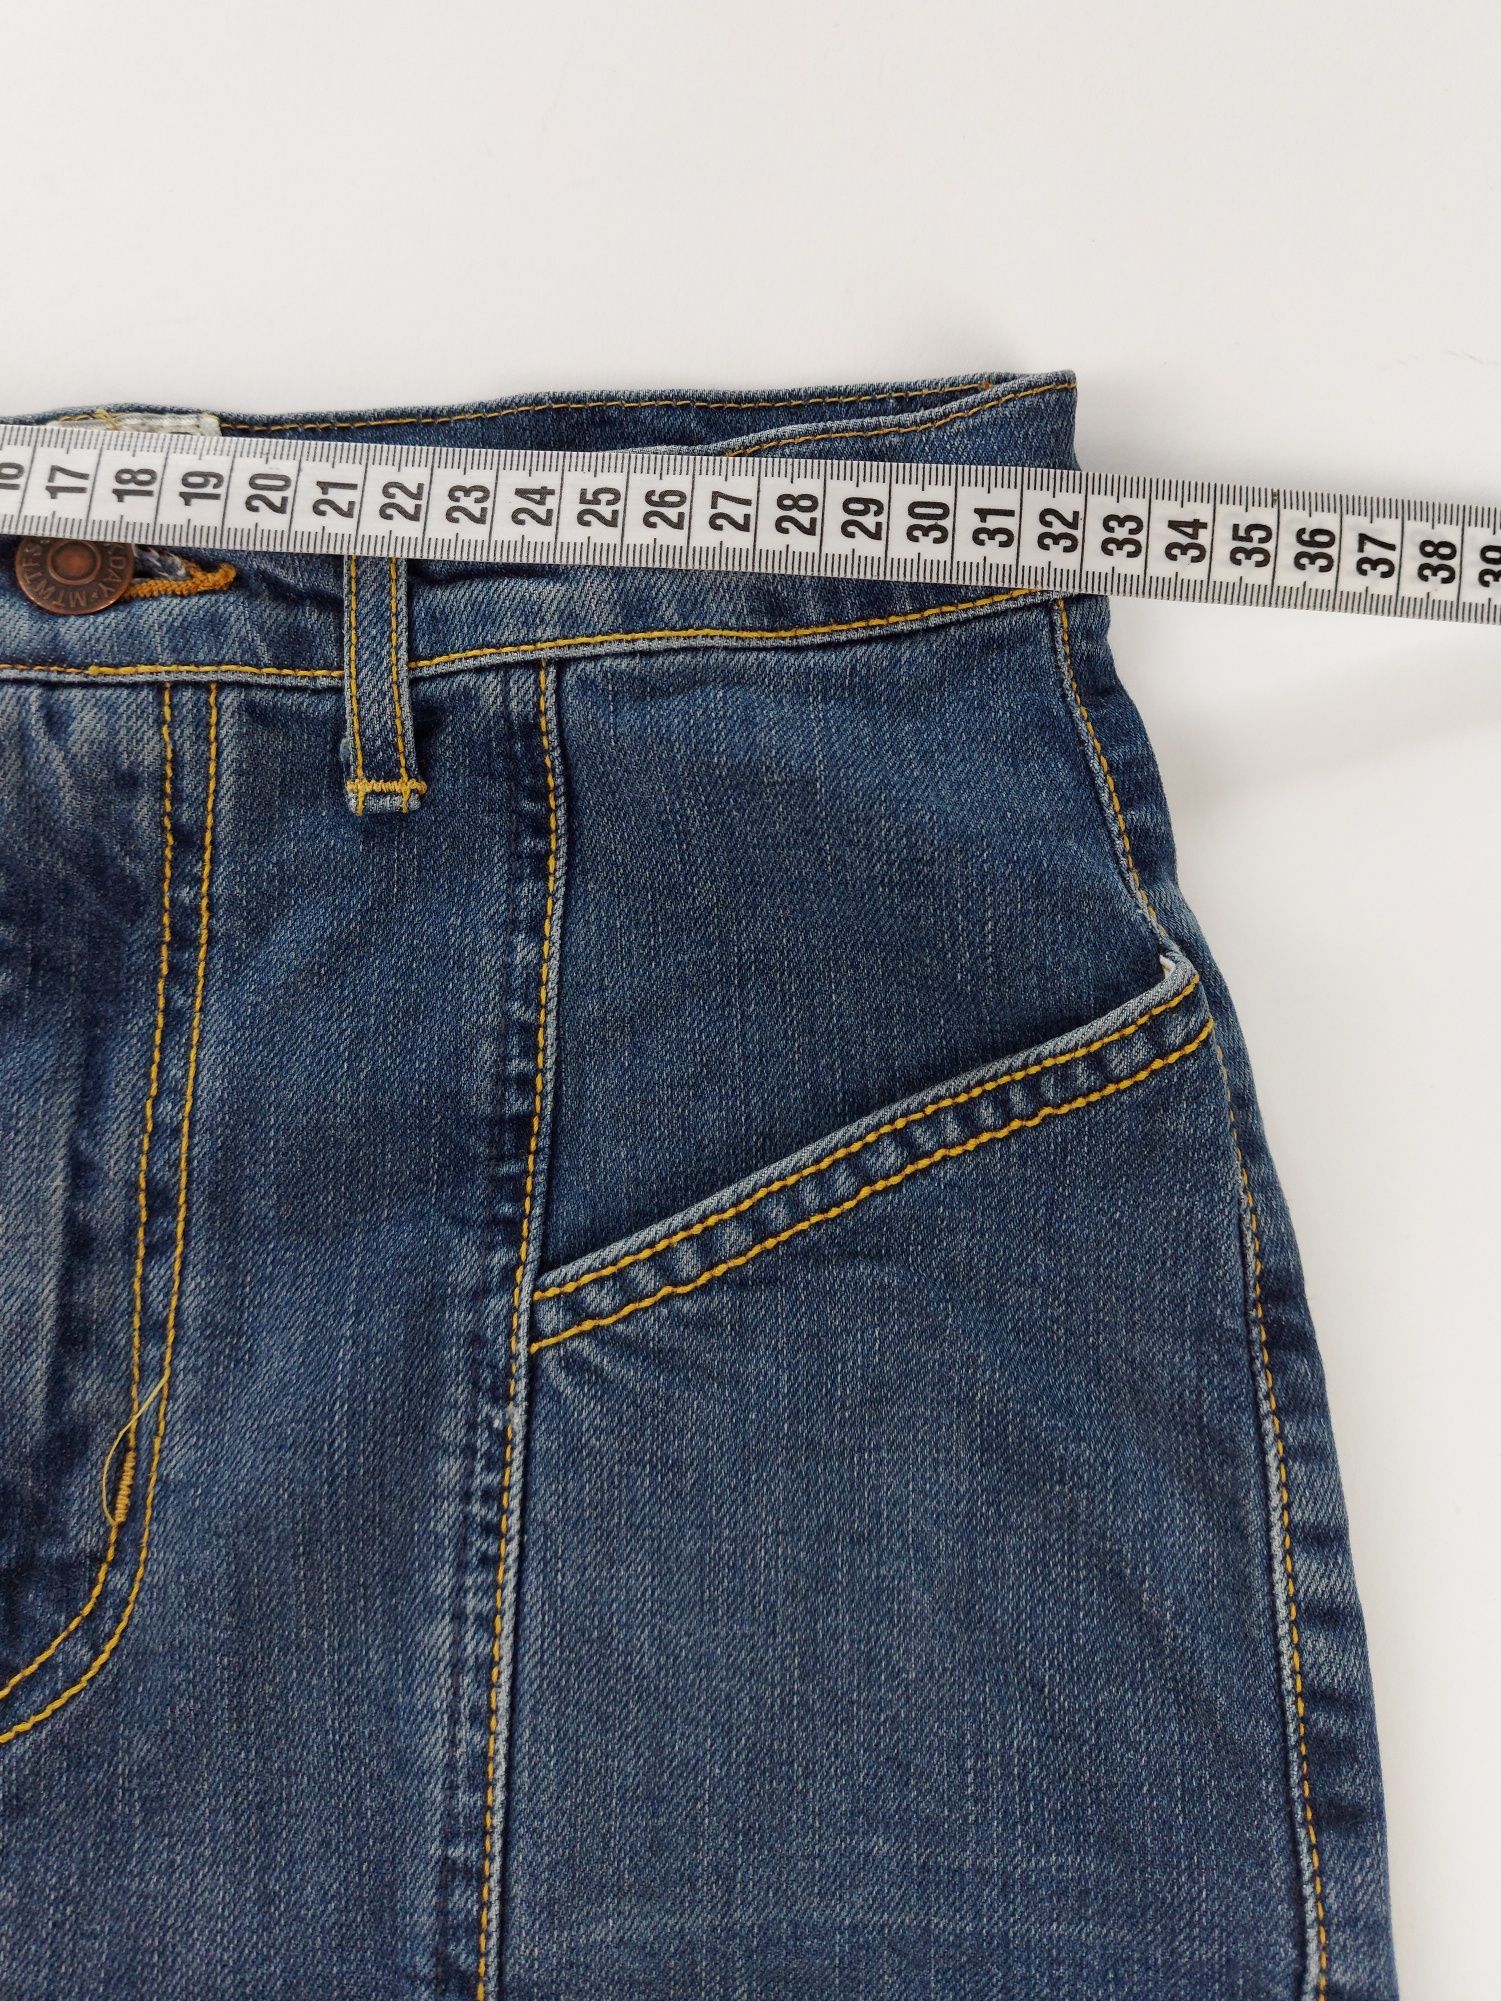 Jeansowa spodnica przed kolano vintage retro rozmiar S dżinsowa